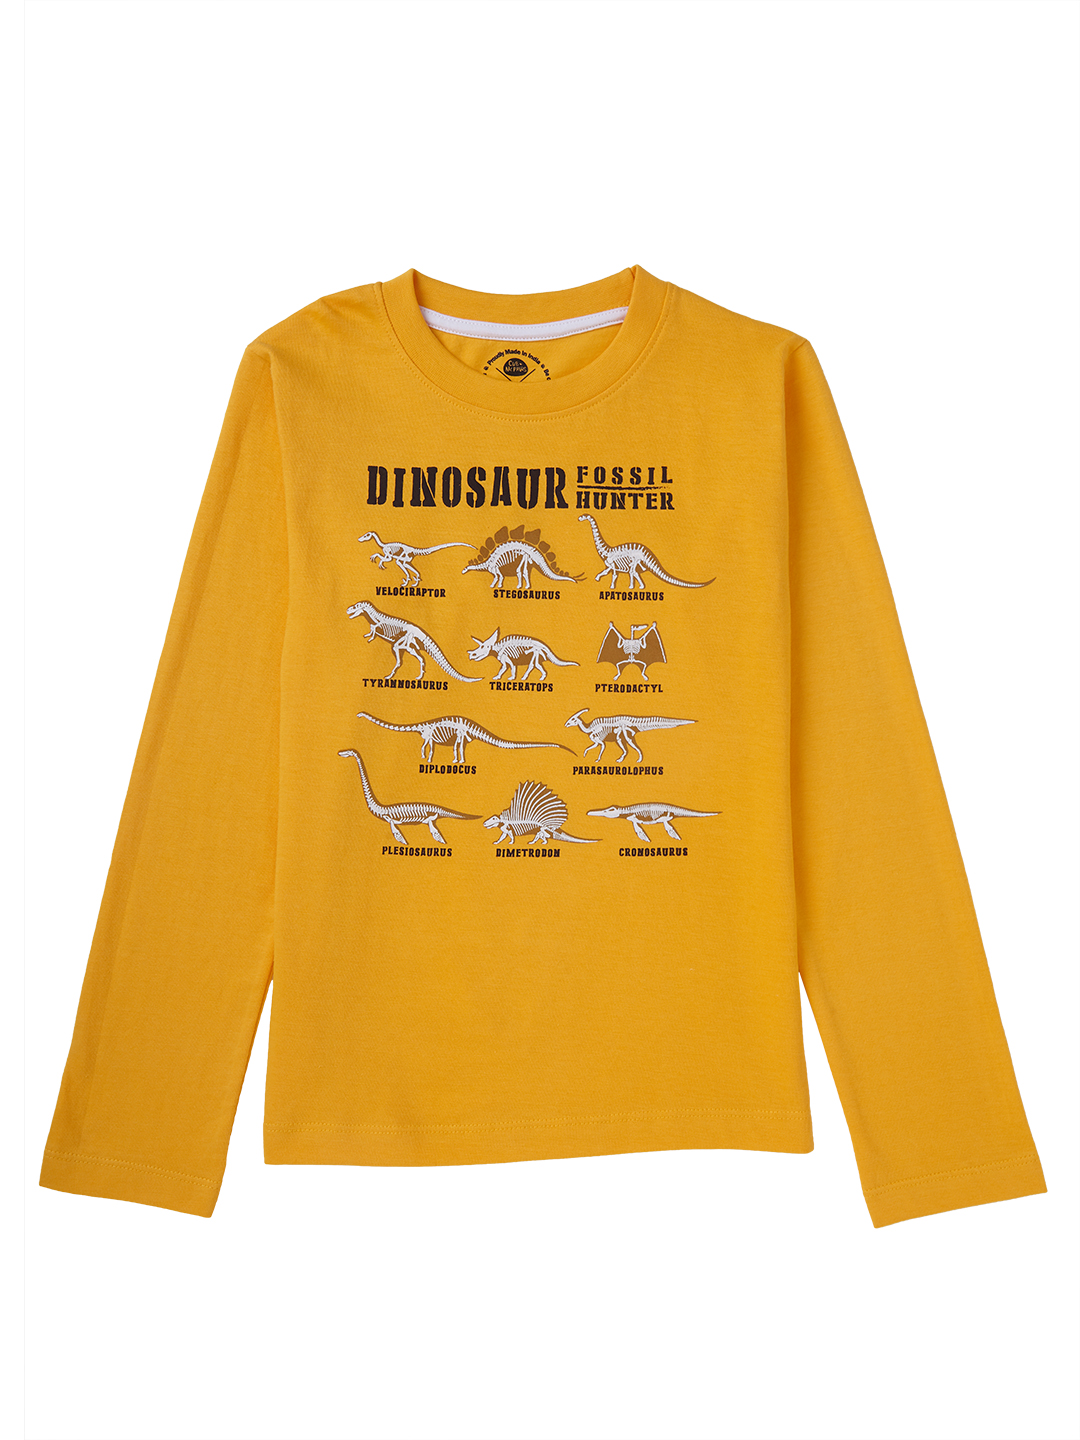 Brilliant Basics T-shirt for Boys  - Dinosaur Print